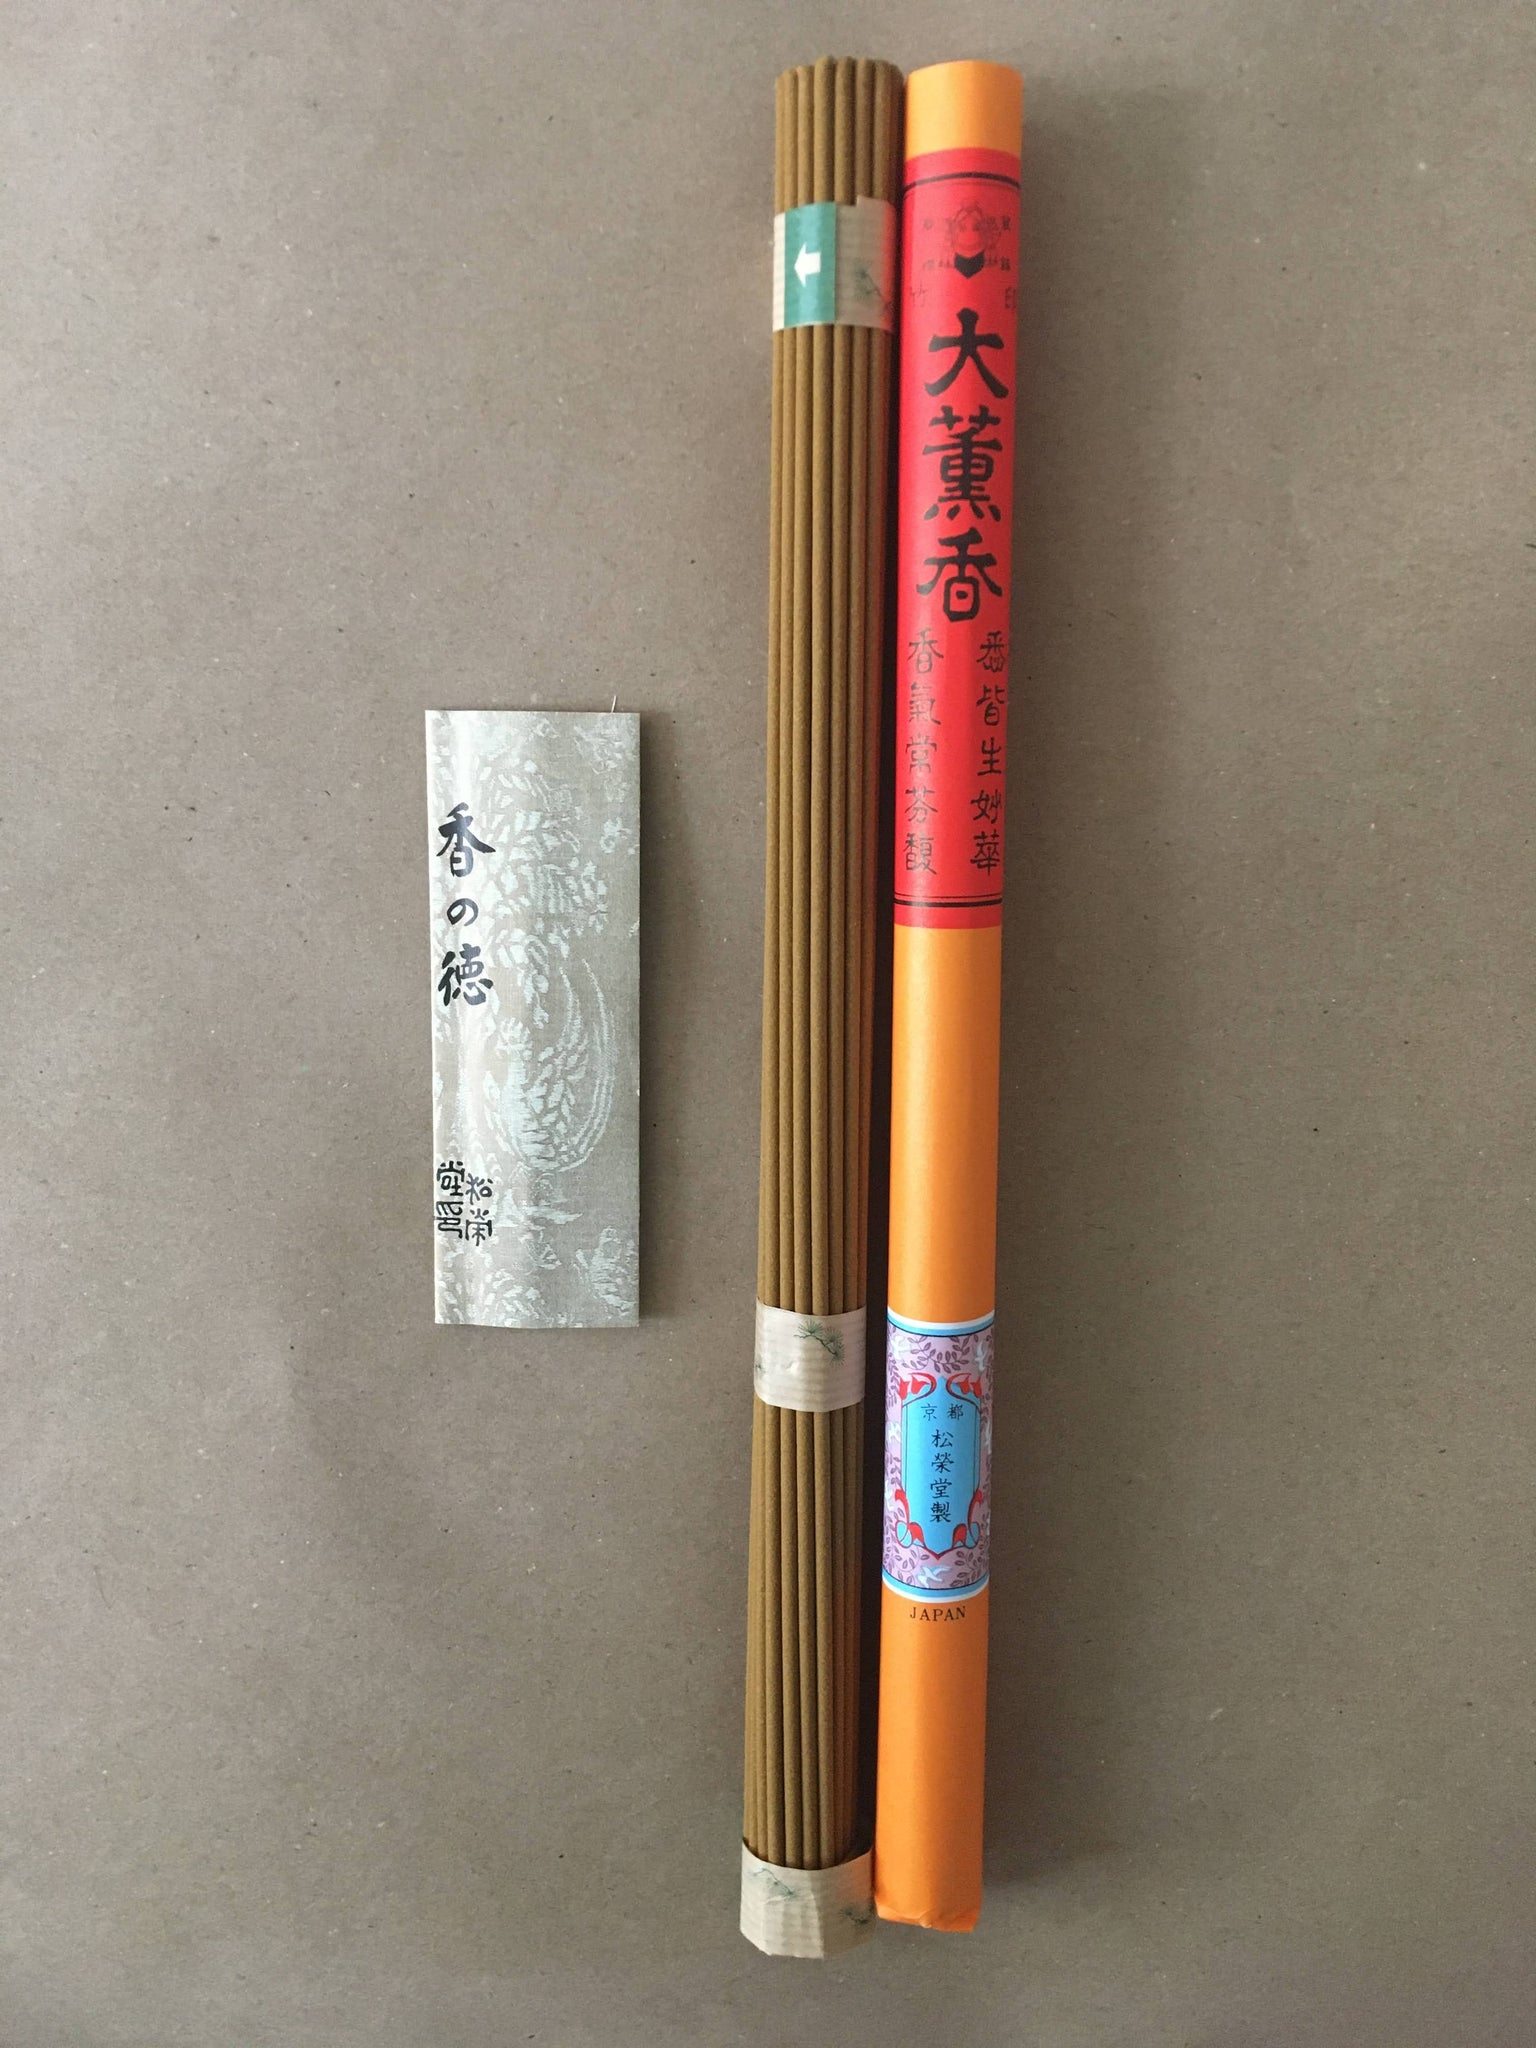 Morning Zen Incense | Temple-Grade Zen Incense by Shoyeido